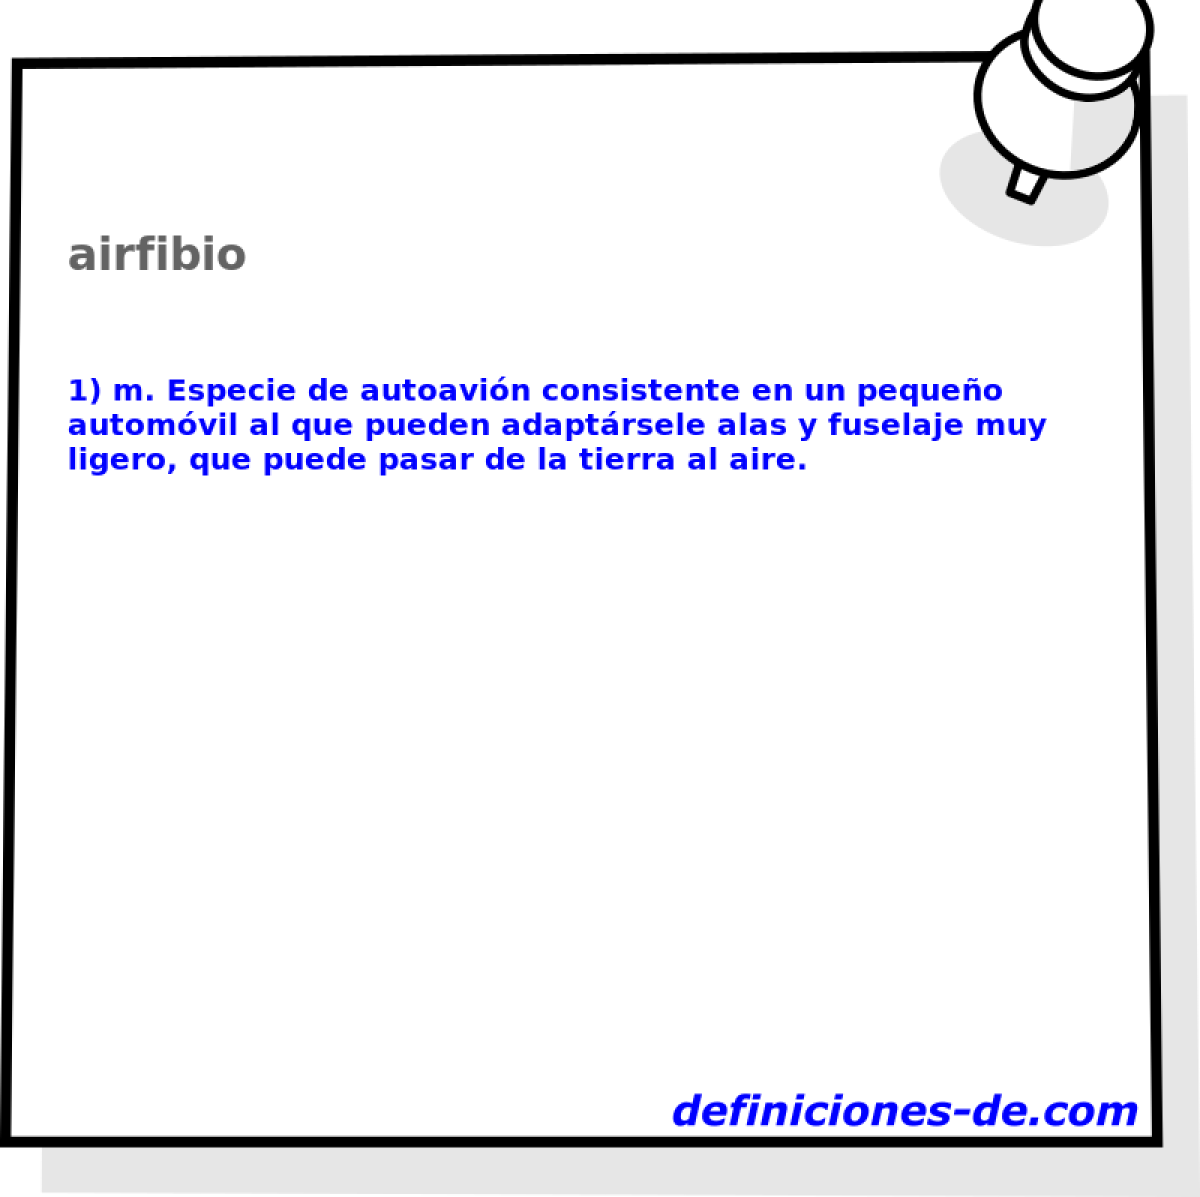 airfibio 